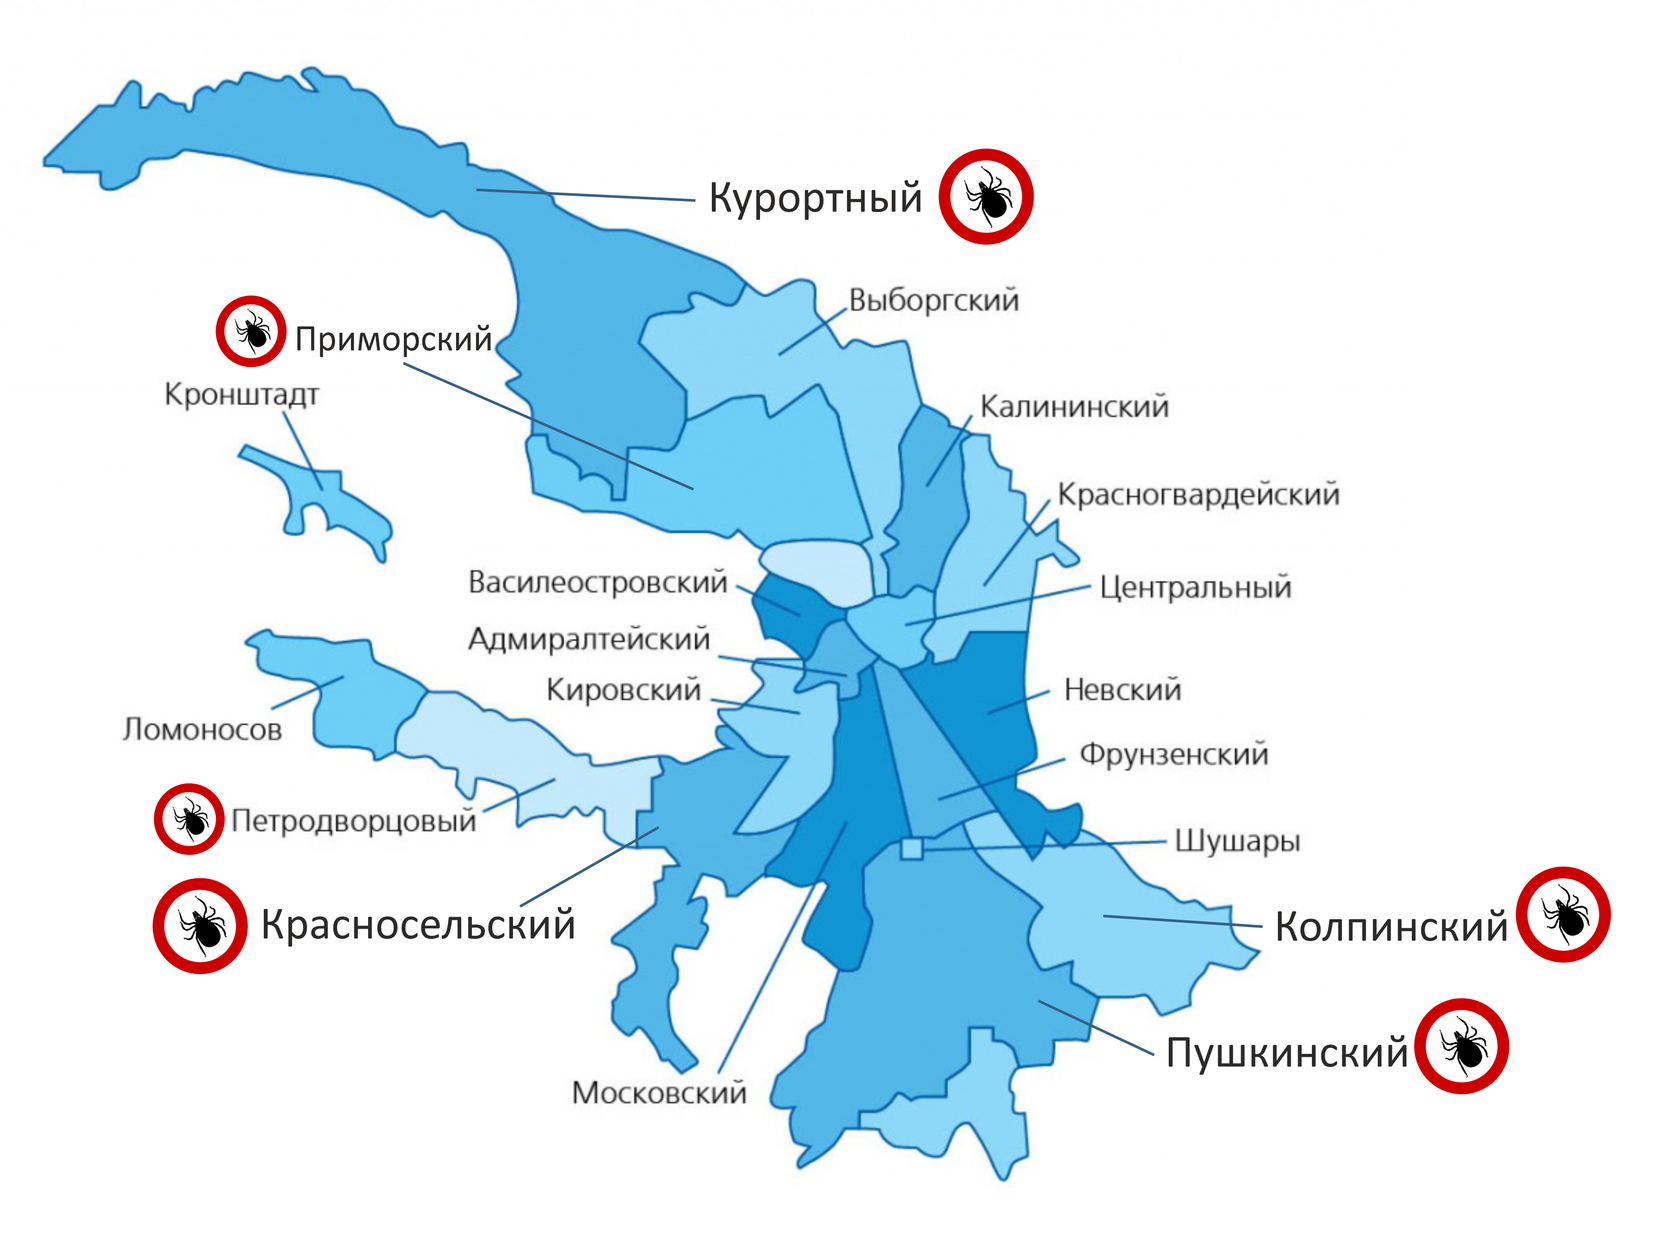 Зеленые районы спб. Районы Санкт-Петербурга. Районы Питера на карте. Карта Санкт-Петербурга по районам. Районы Санкт-Петербурга на карте с границами.